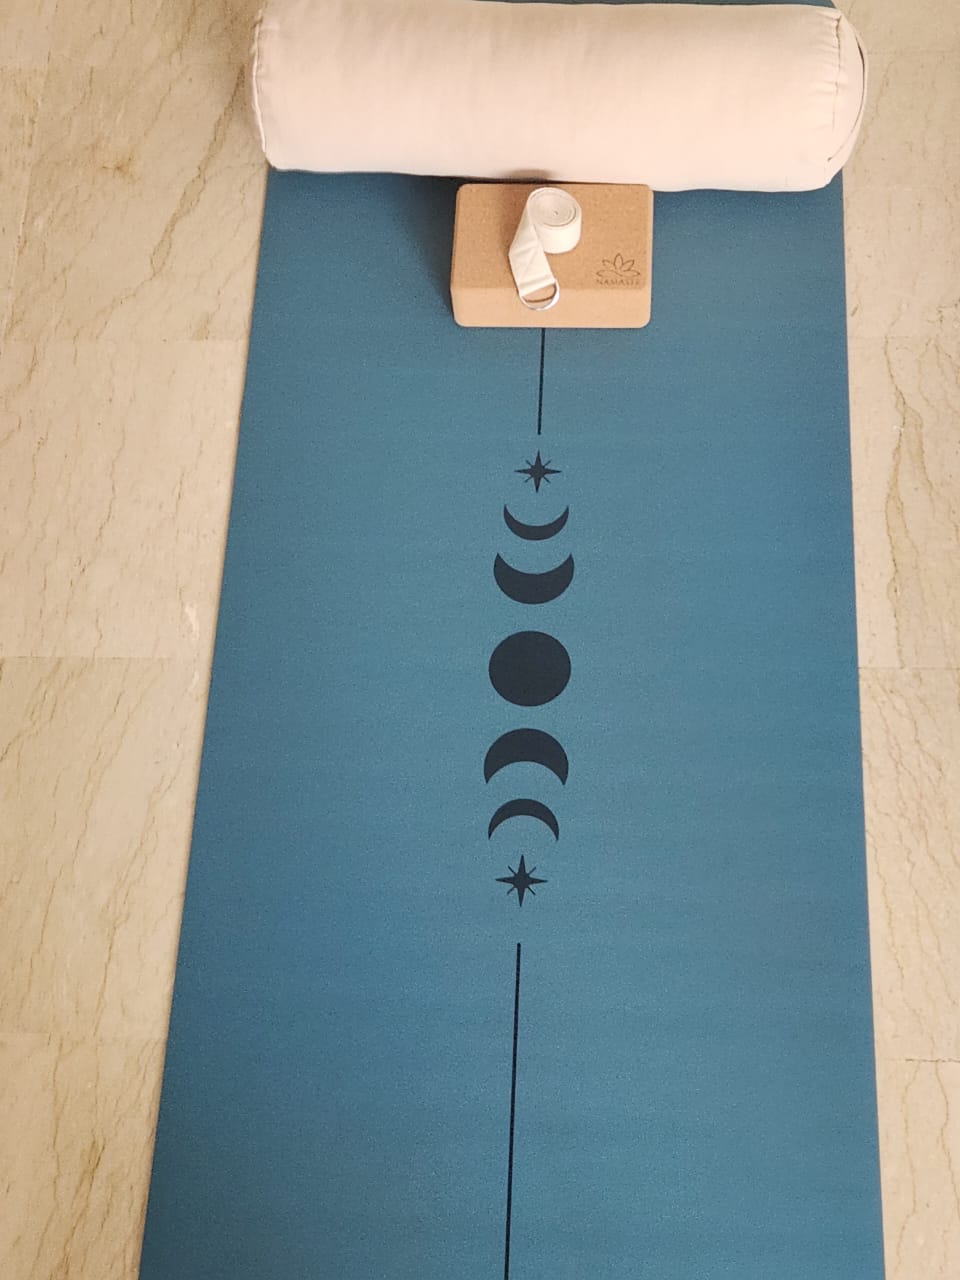 Tapis de yoga en caoutchouc naturel et polyuréthane – Moon Bleu